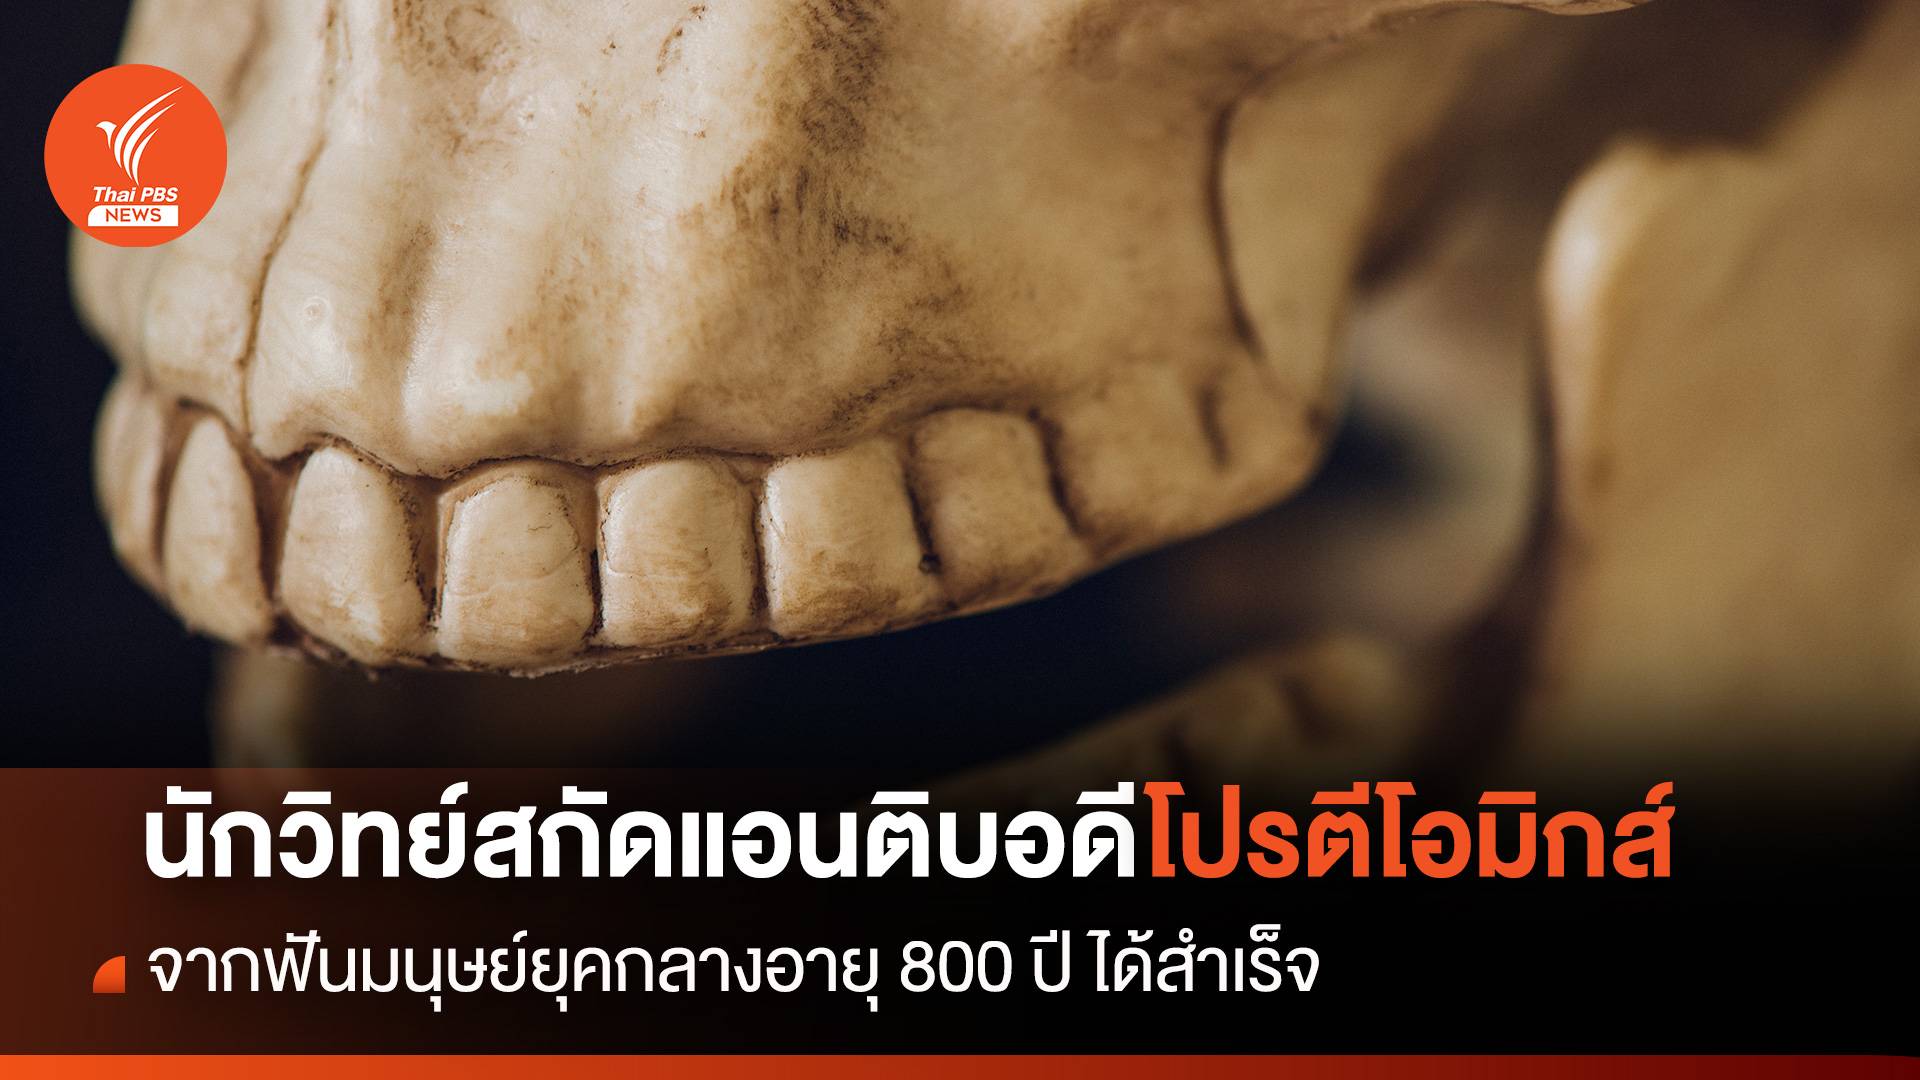 นักวิทย์สกัดแอนติบอดี จากฟันมนุษย์ยุคกลางอายุ 800 ปี ได้สำเร็จ